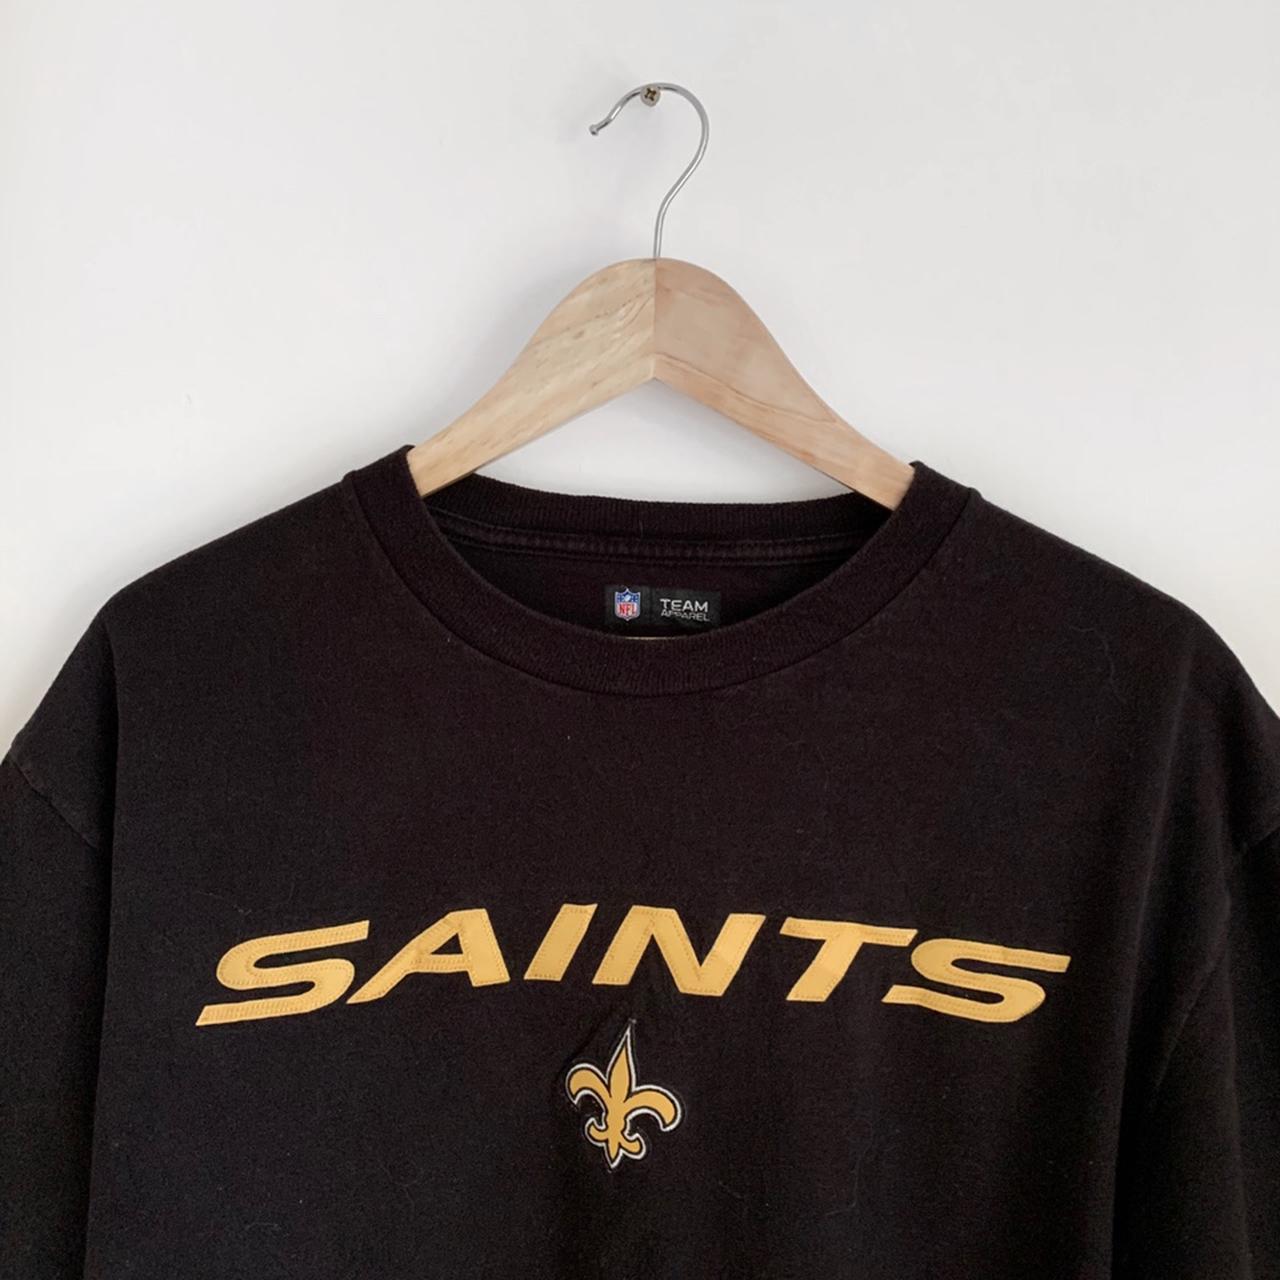 Saints NFL new era official merchandise! Size large... - Depop